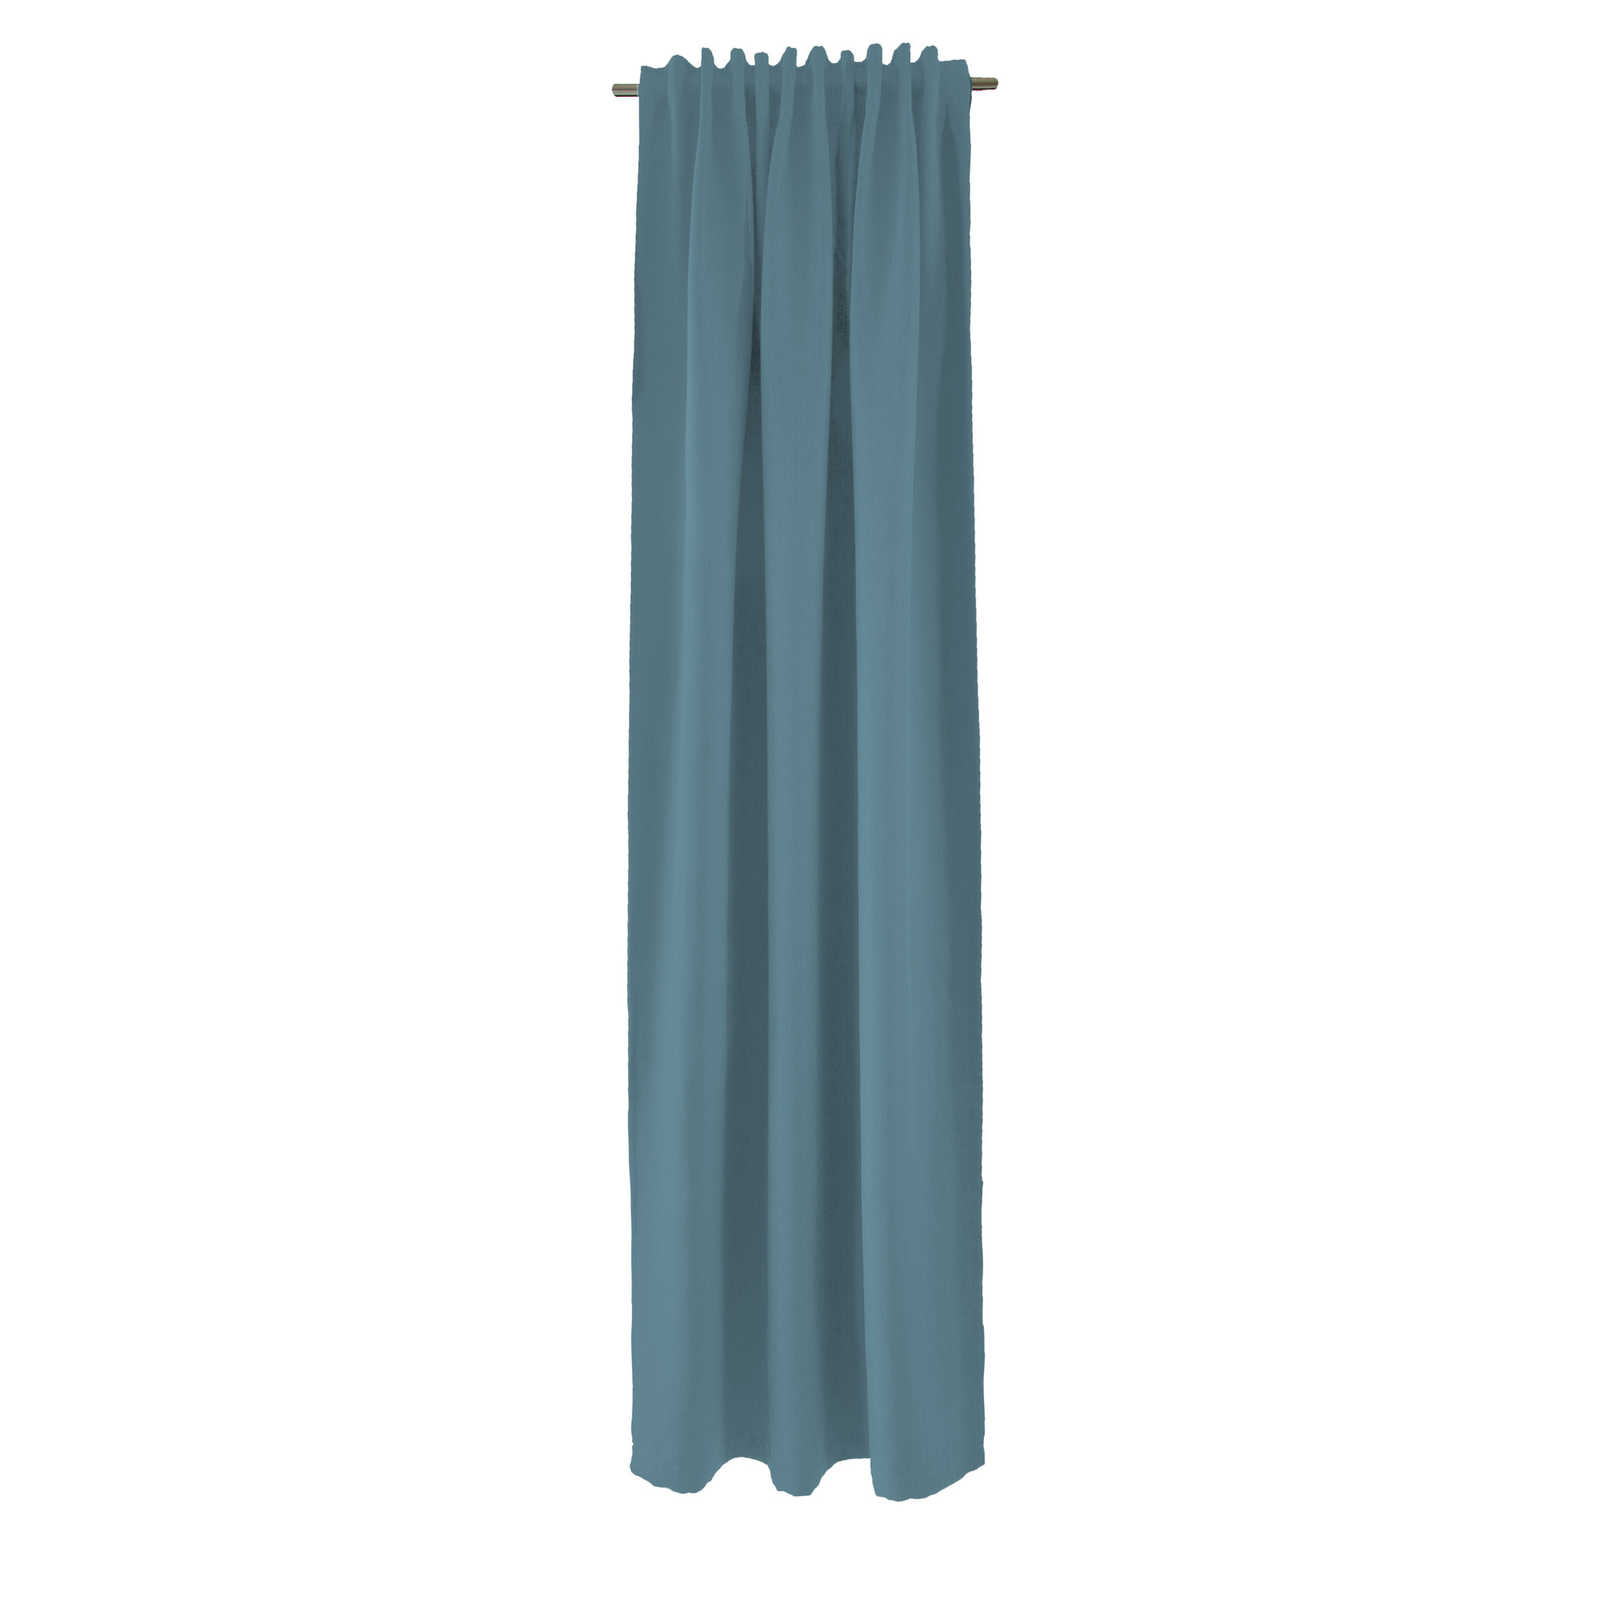 Echarpe décorative à passants 140 cm x 245 cm fibre synthétique bleu tourterelle
